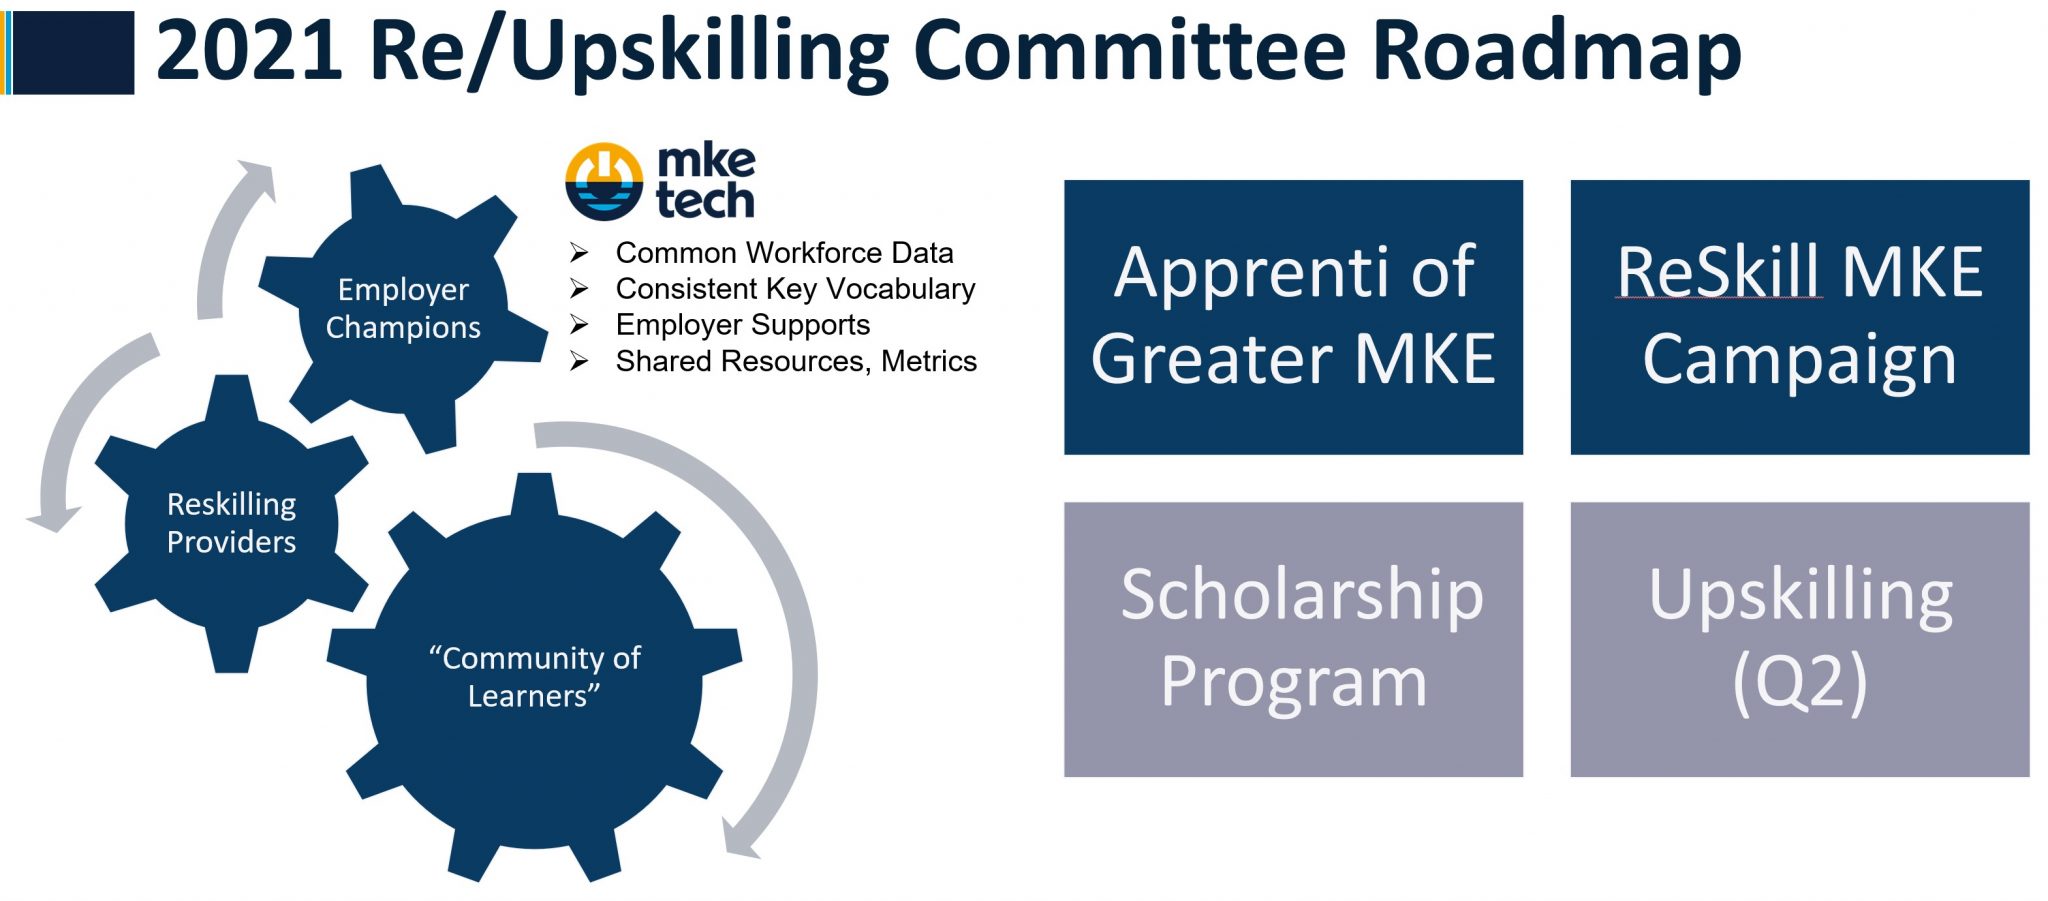 2021 Reskilling Roadmap highlighting committee programs